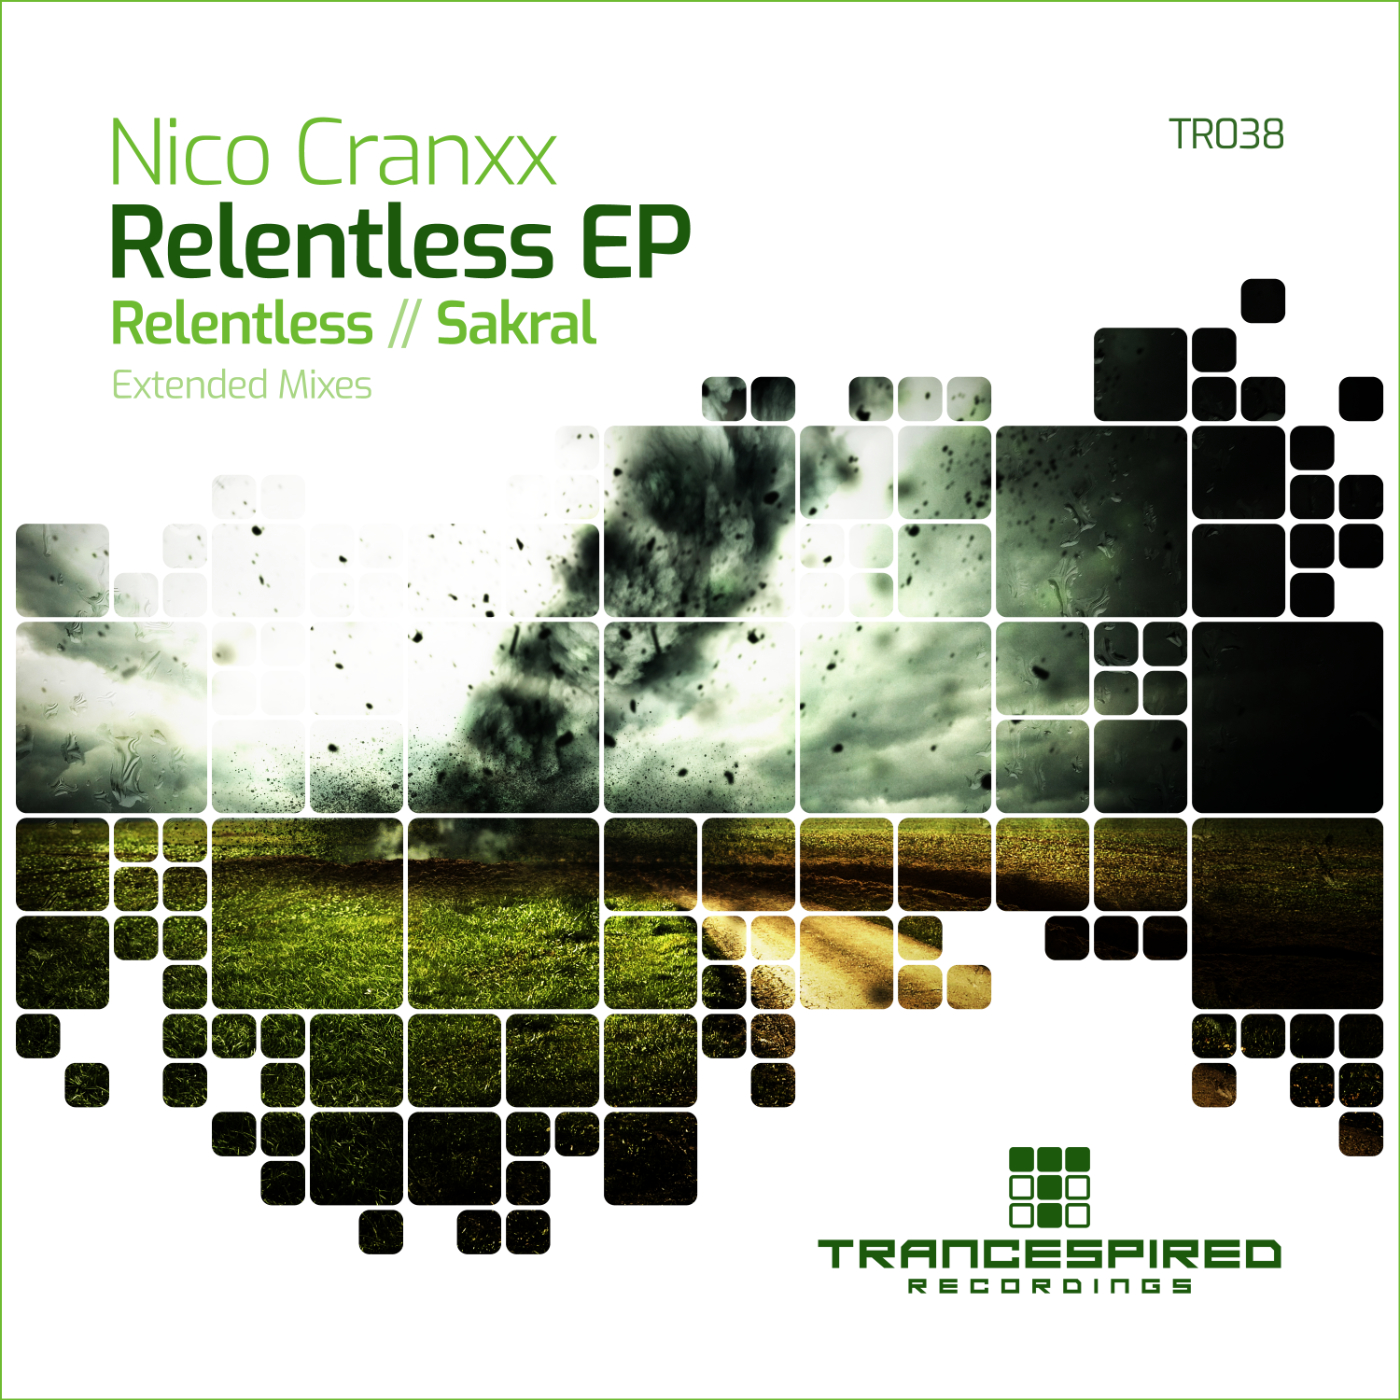 Nico Cranxx presents Relentless EP on Trancespired Recordings